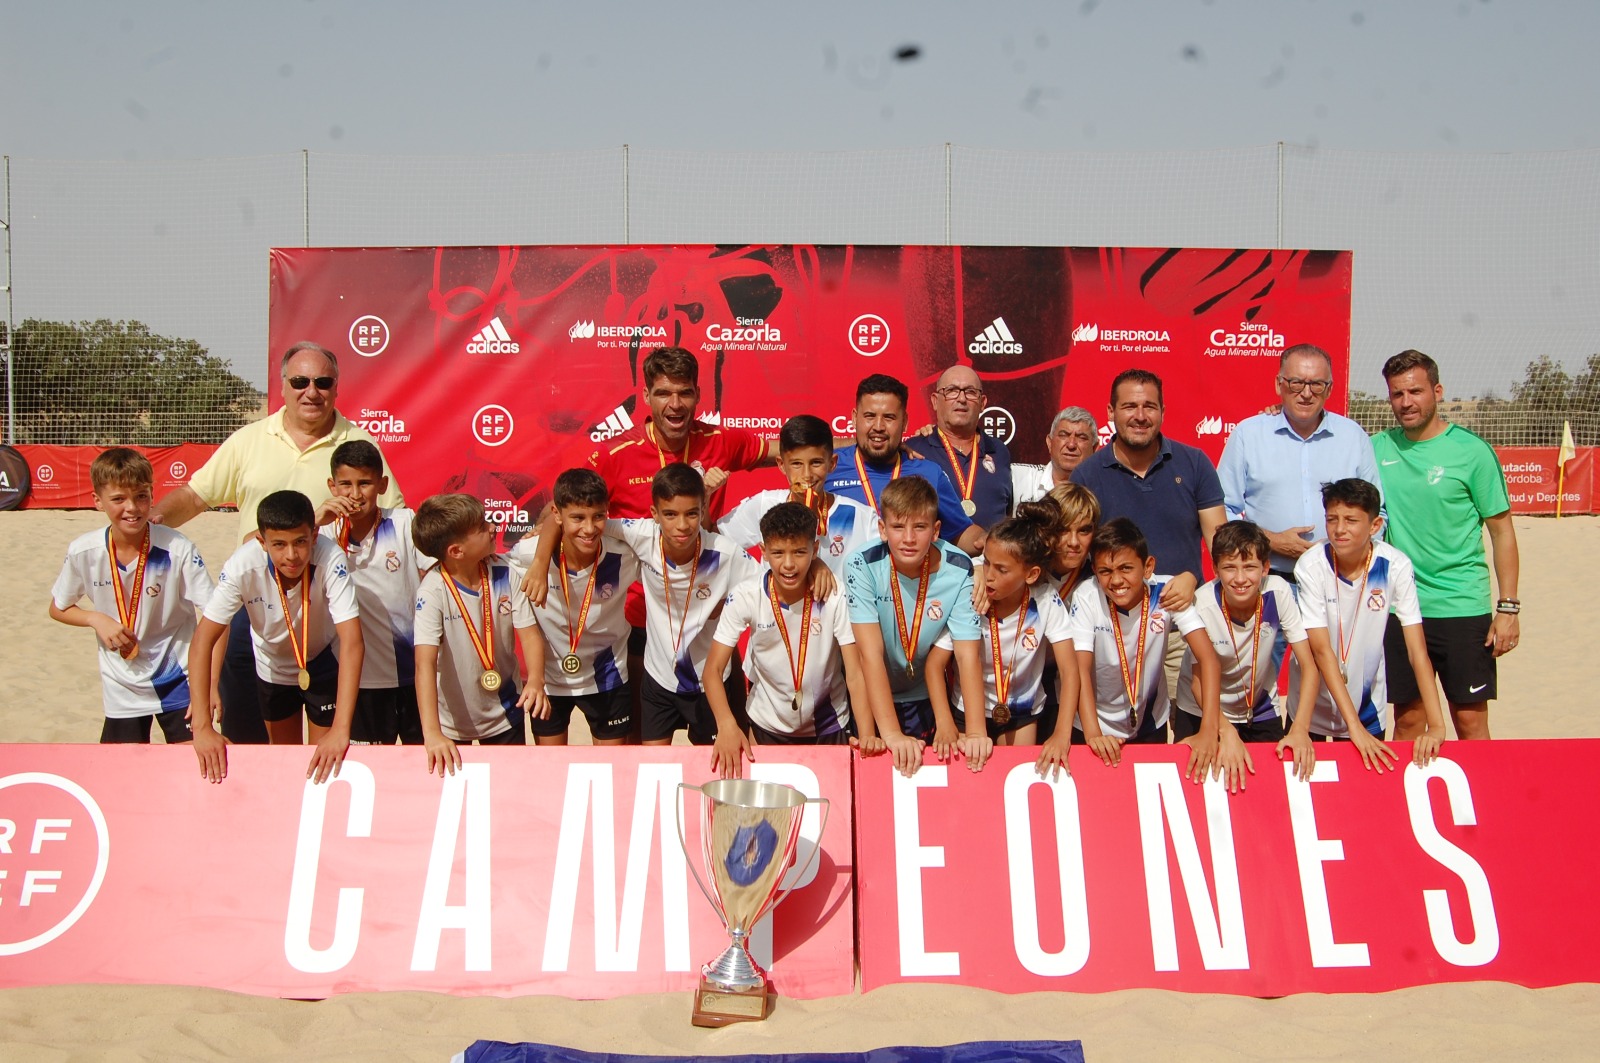 La Peña Real Madrid ha ido de menos a más durante el Campeonato Nacional Alevín y ha demostrado un gran nivel, alzándose con el título de campeones de España.